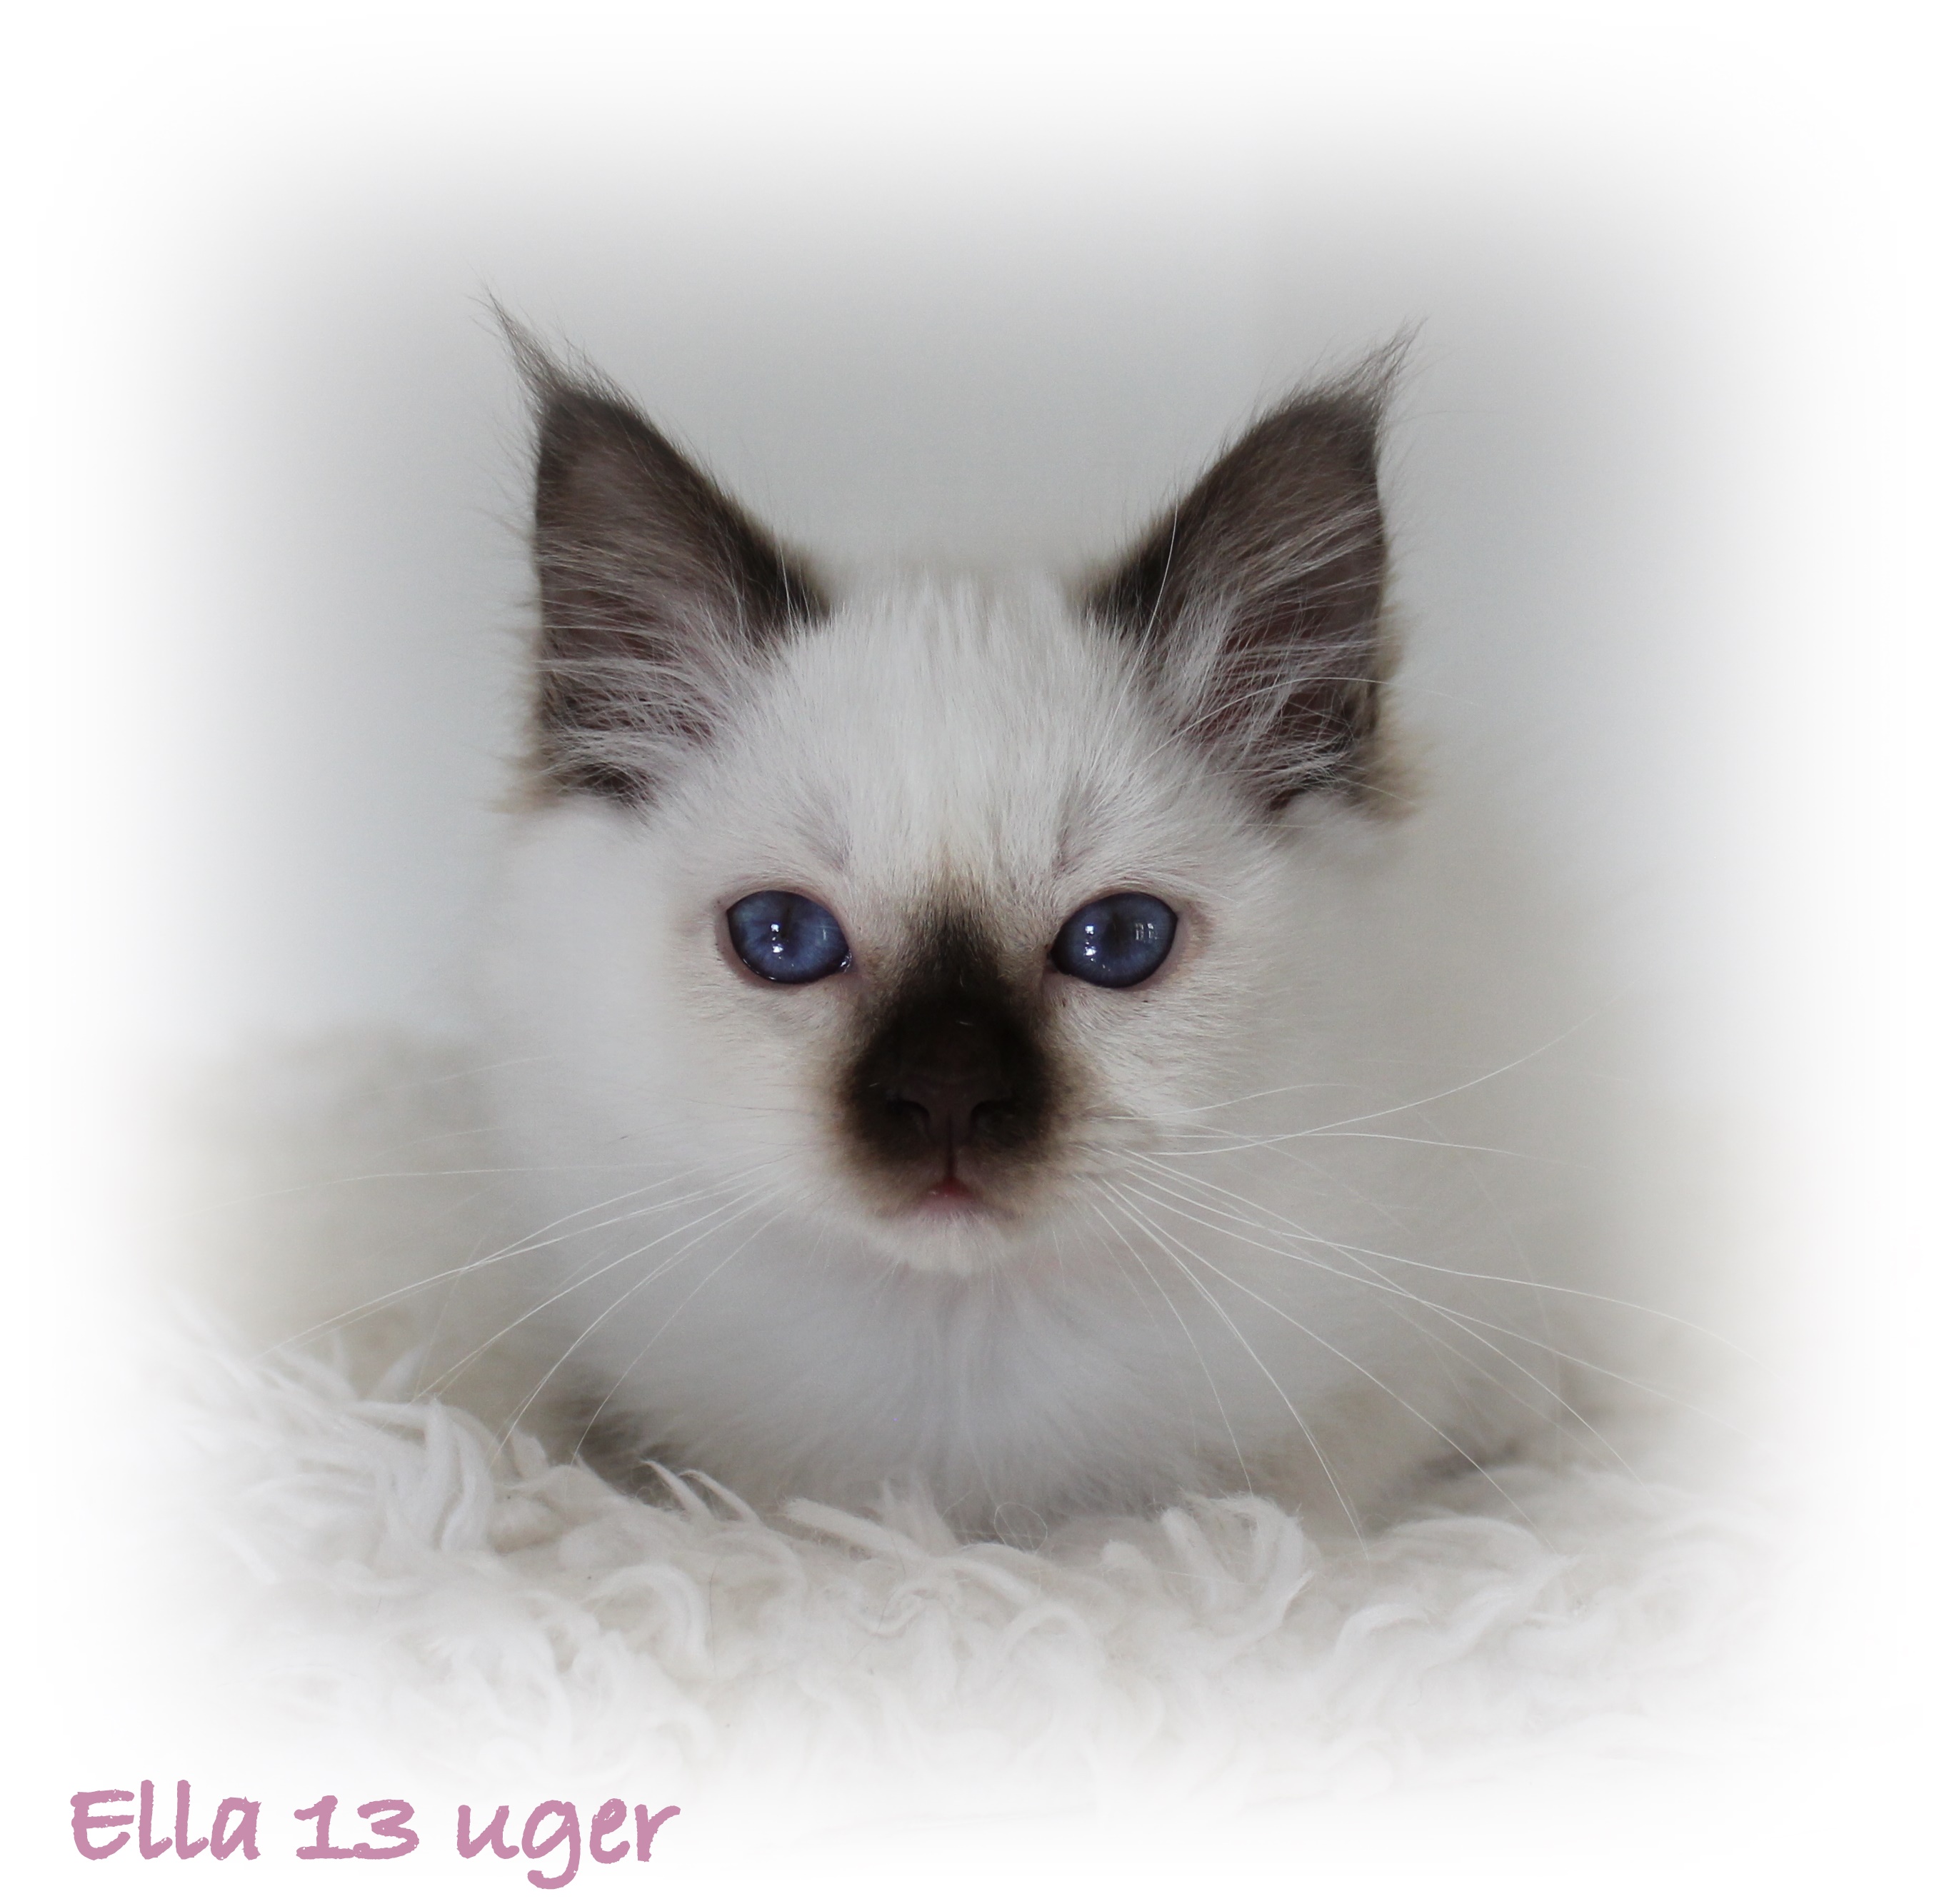 13 uger Ella (5)